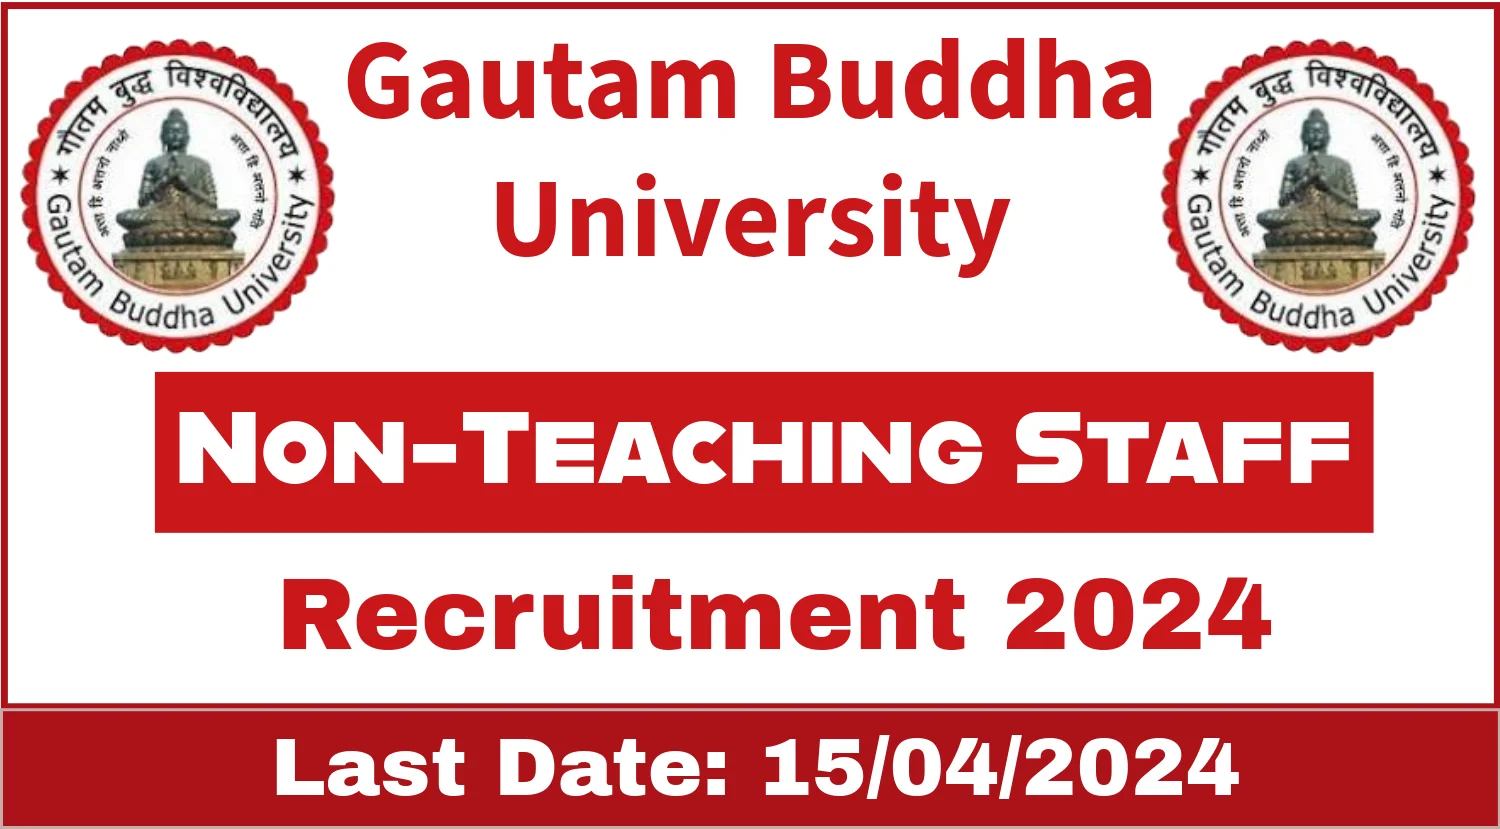 Gautam Buddha University Non-Teaching Staff Recruitment 2024